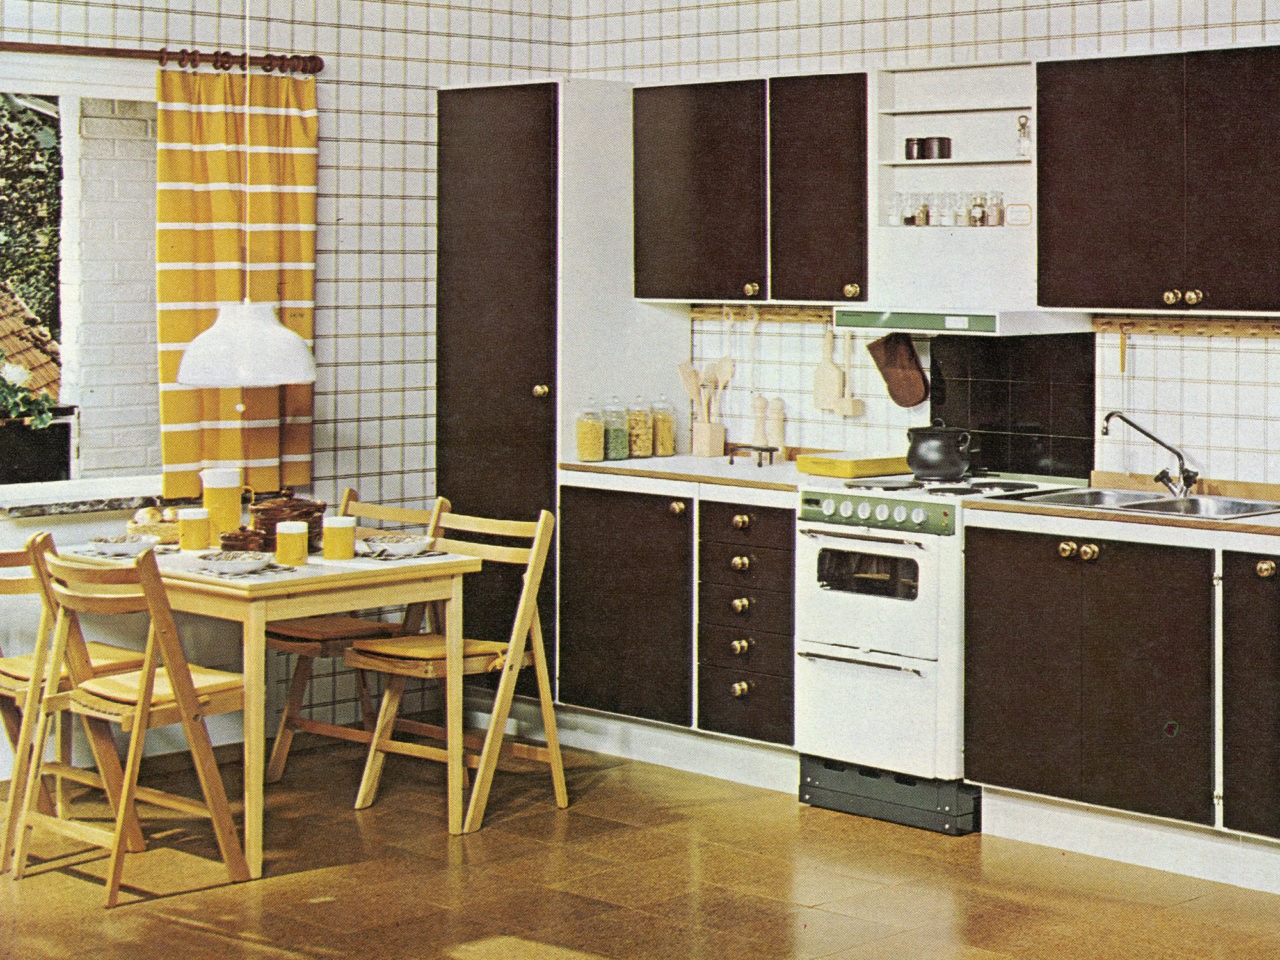 Cocina con suelo de corcho, armarios marrones, placas, horno y lavavajillas blancos, pared a cuadros y sillas de madera.